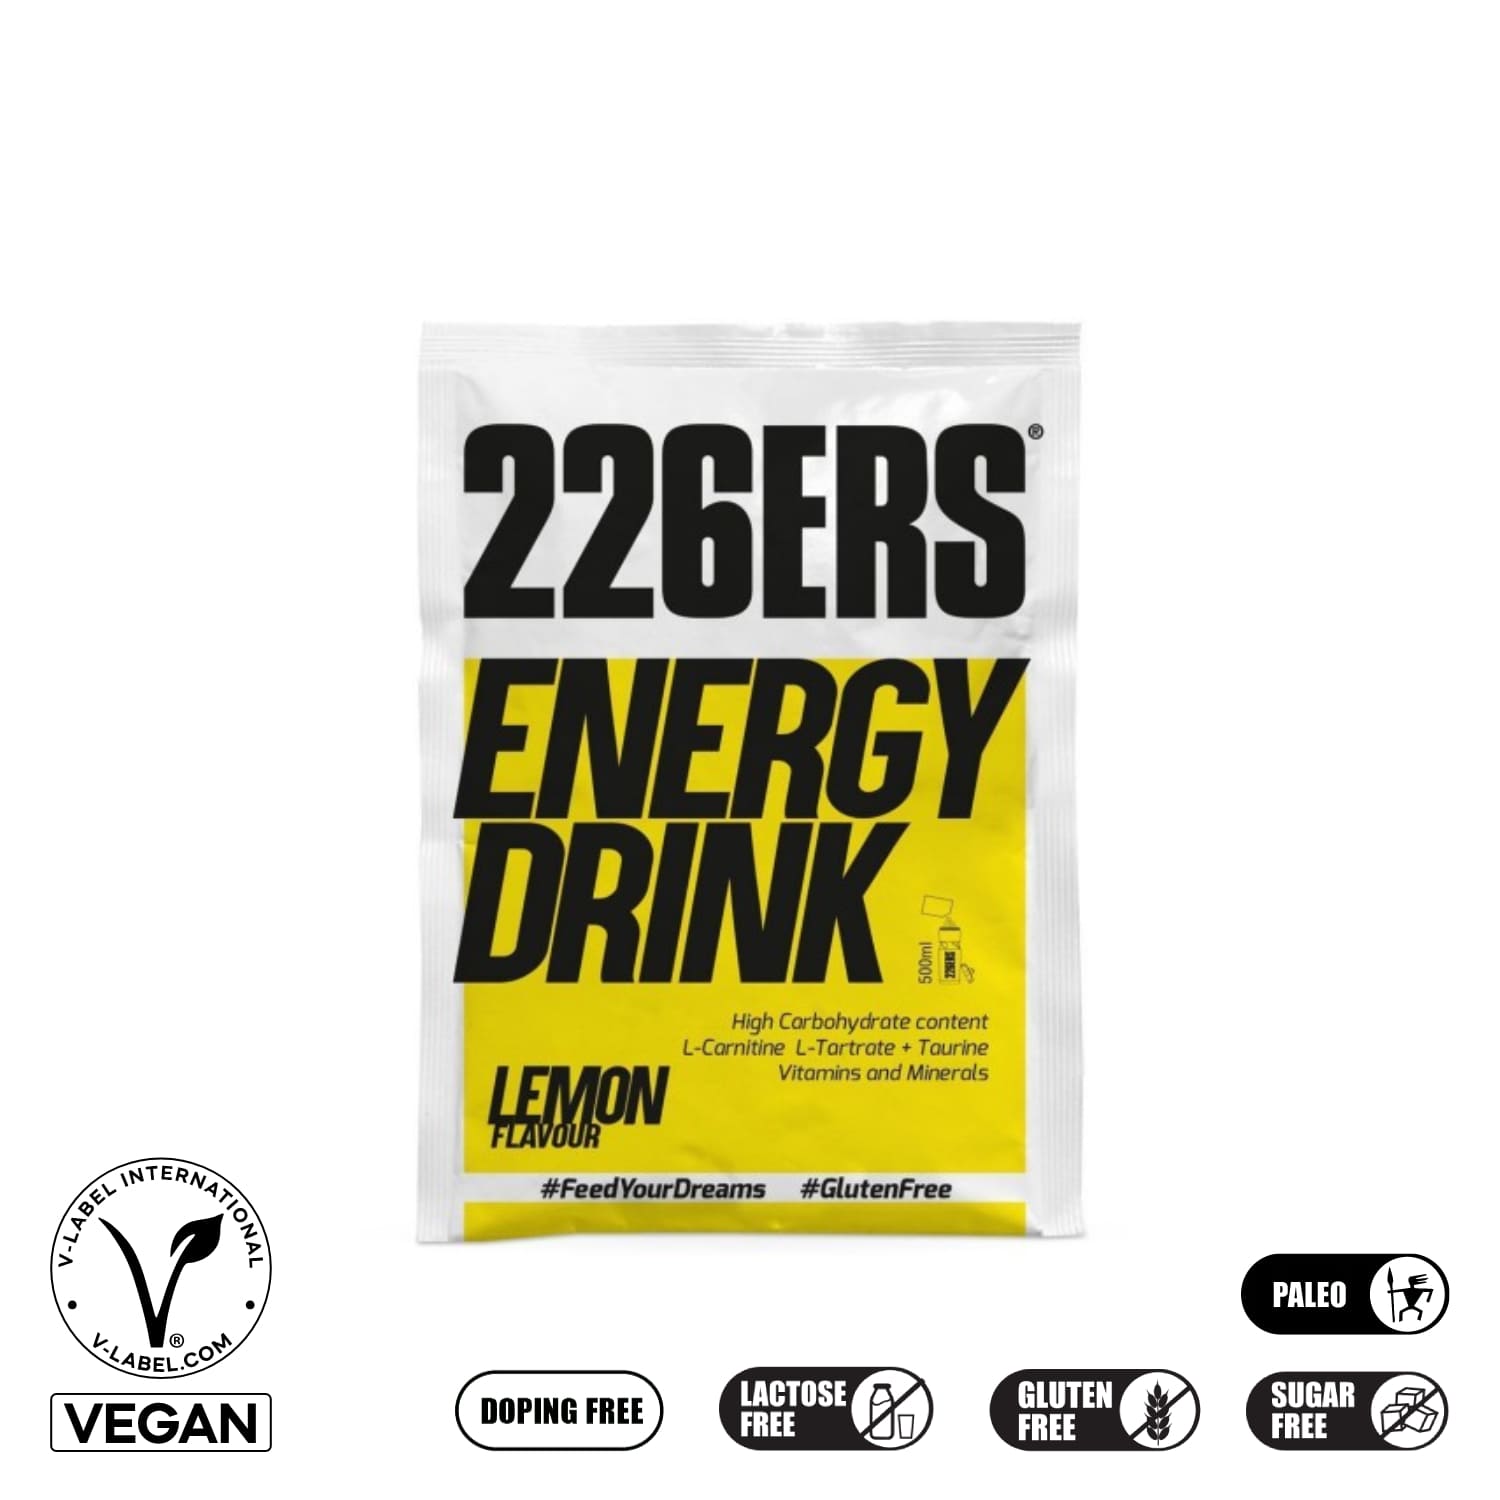 226ers_energy drink_lemon